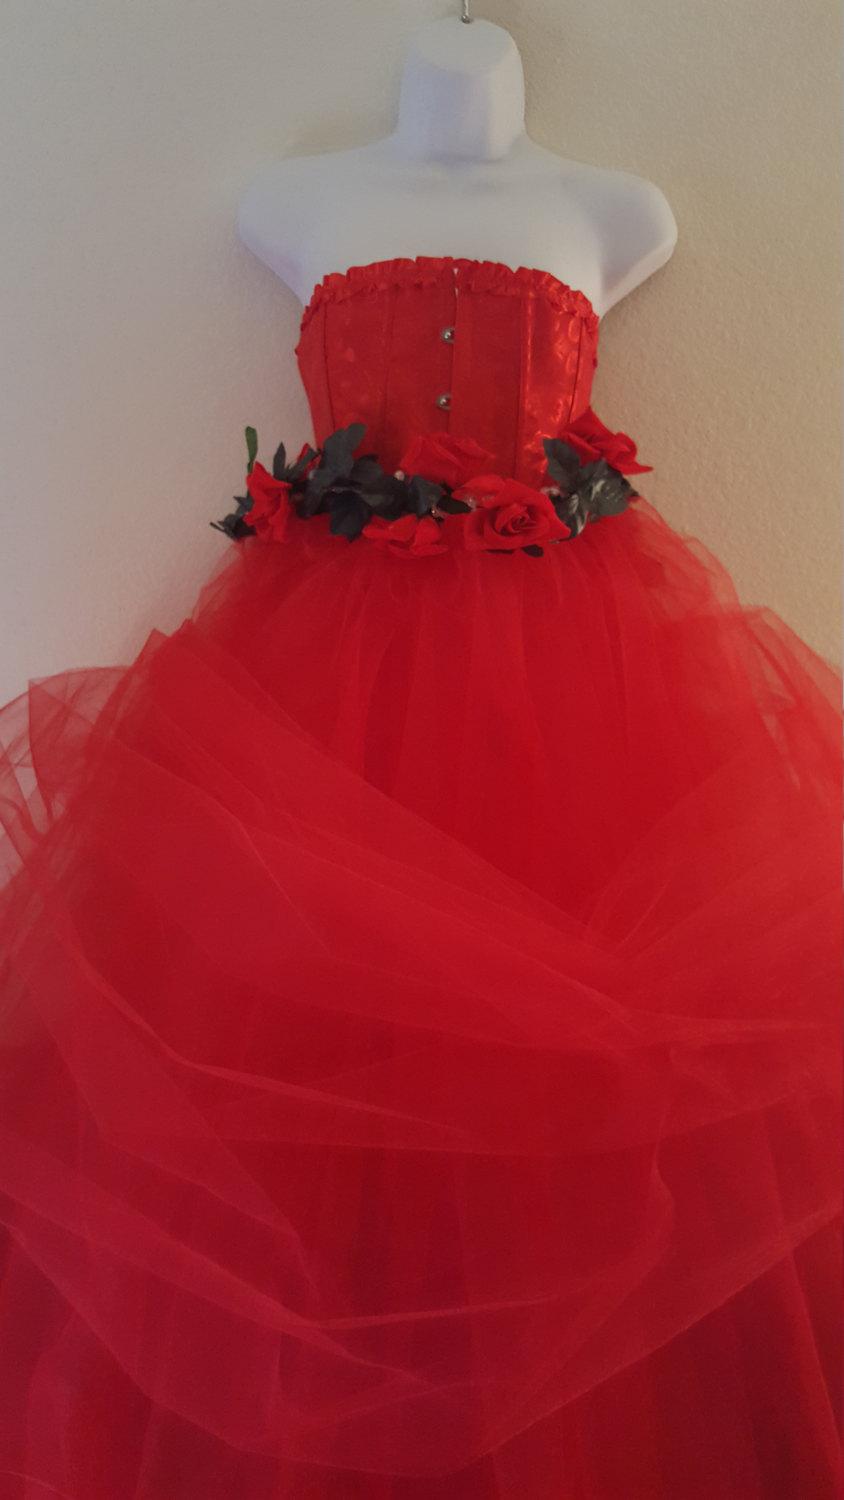 زفاف - Sample Gown Listing / Valentine Rose Goddess Romantic Red Corset Tulle Ball Gown Dress Bridal Wedding Gown Party Costume